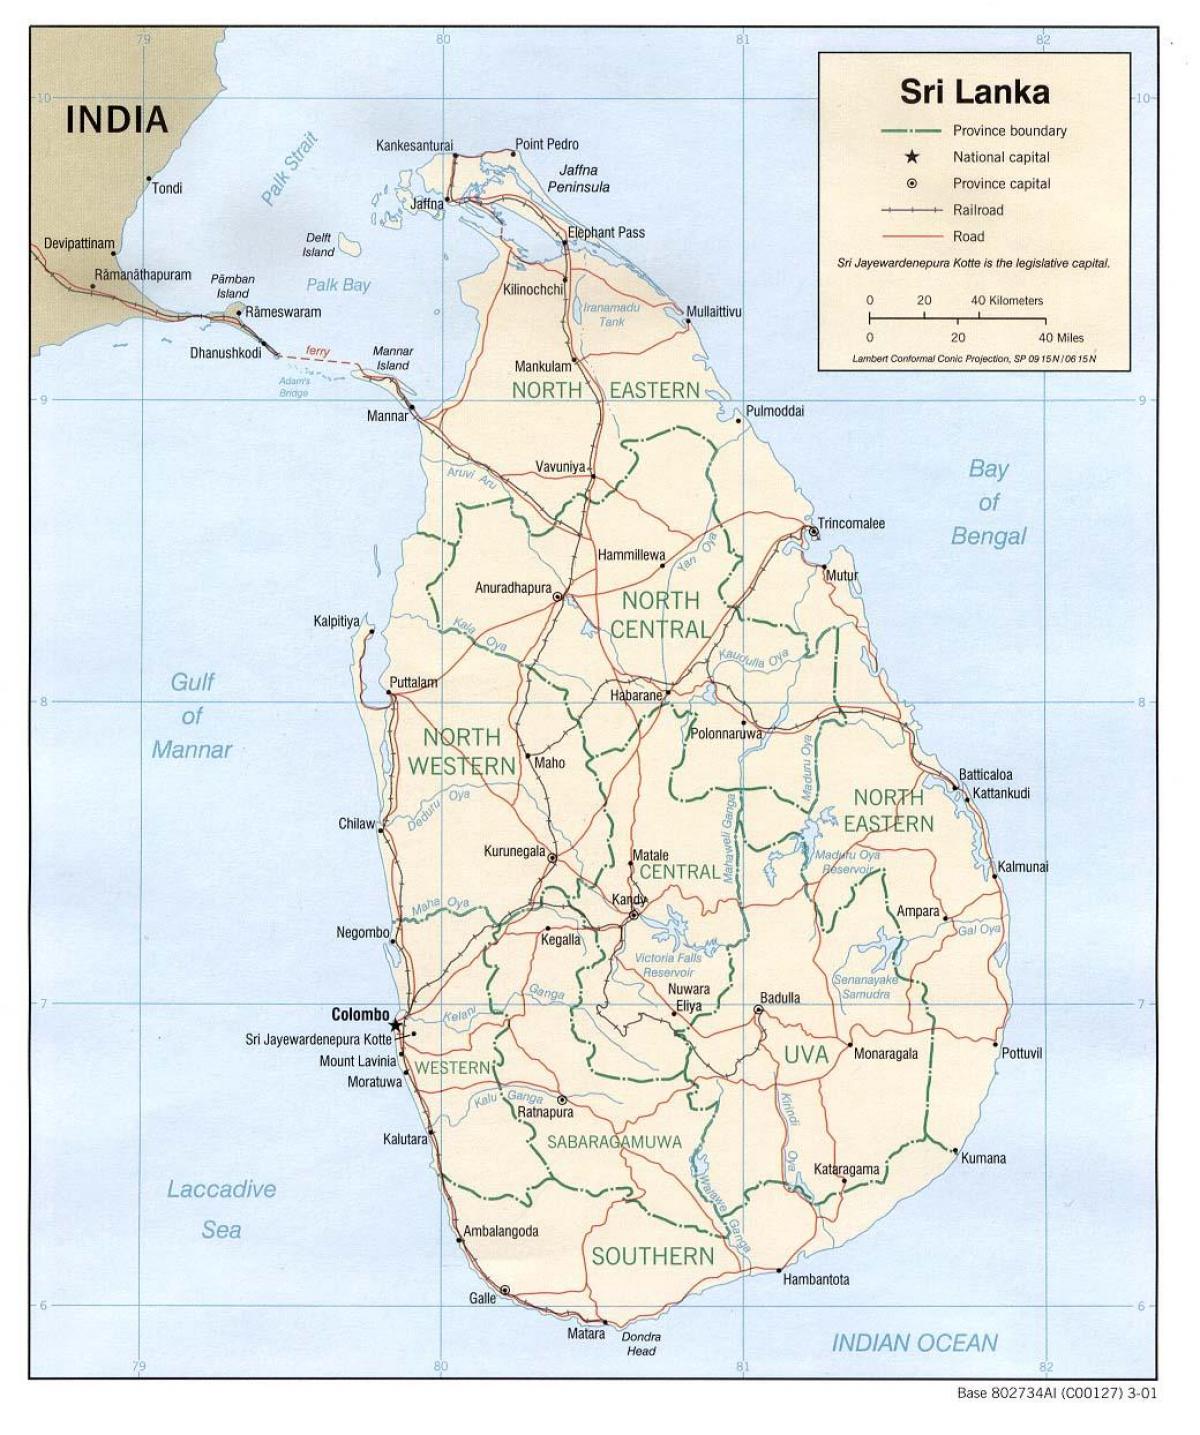 Sri Lanka bas peta